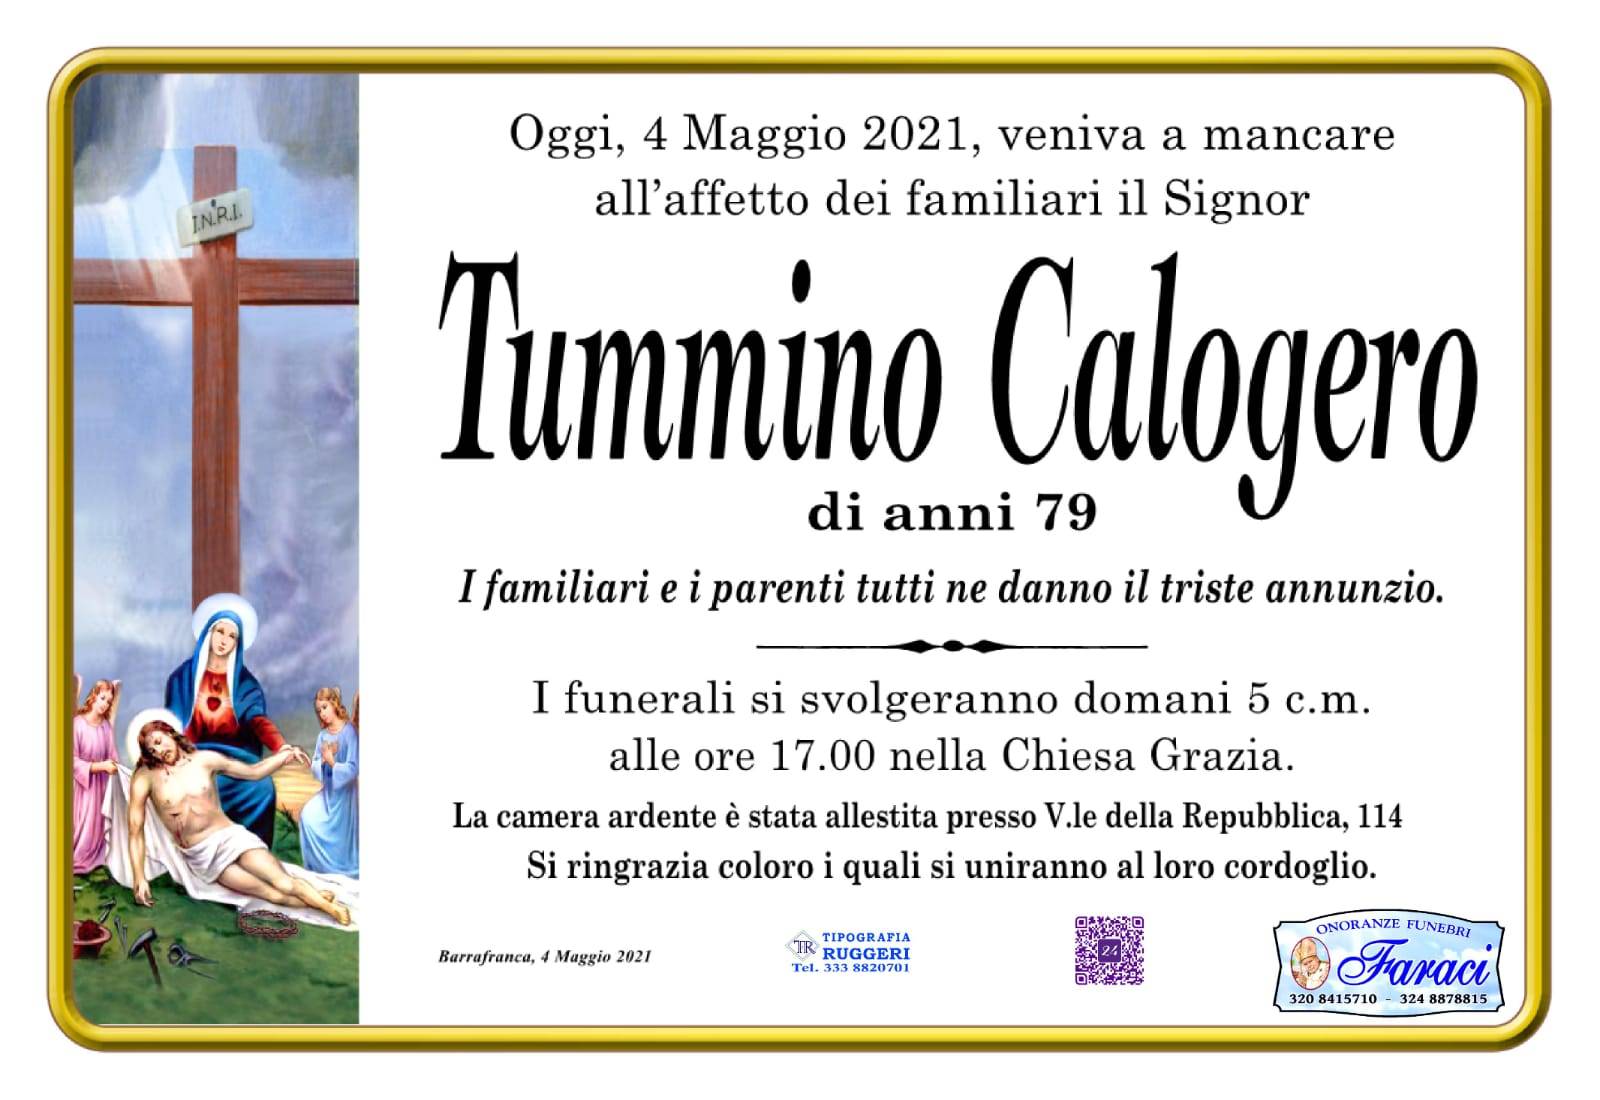 Calogero Tummino